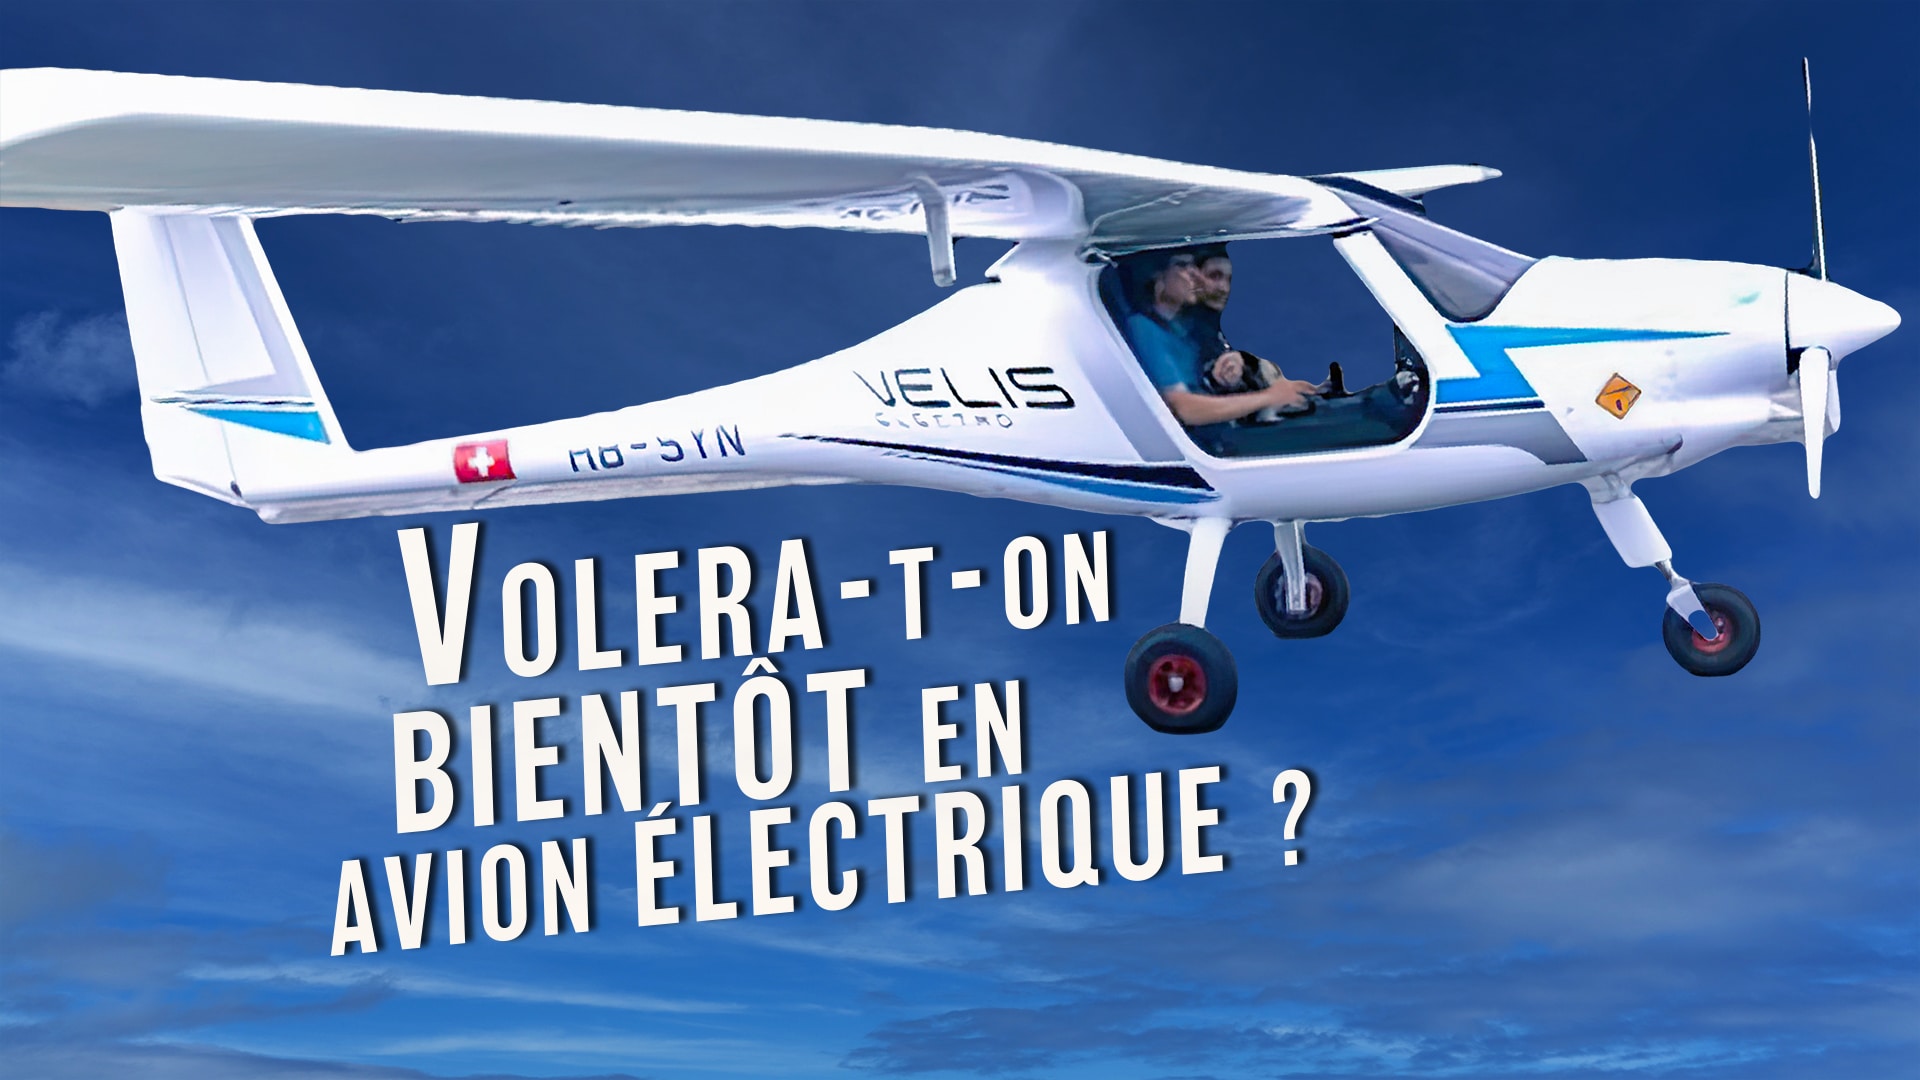 Volera-t-on bientôt en avion électrique ?